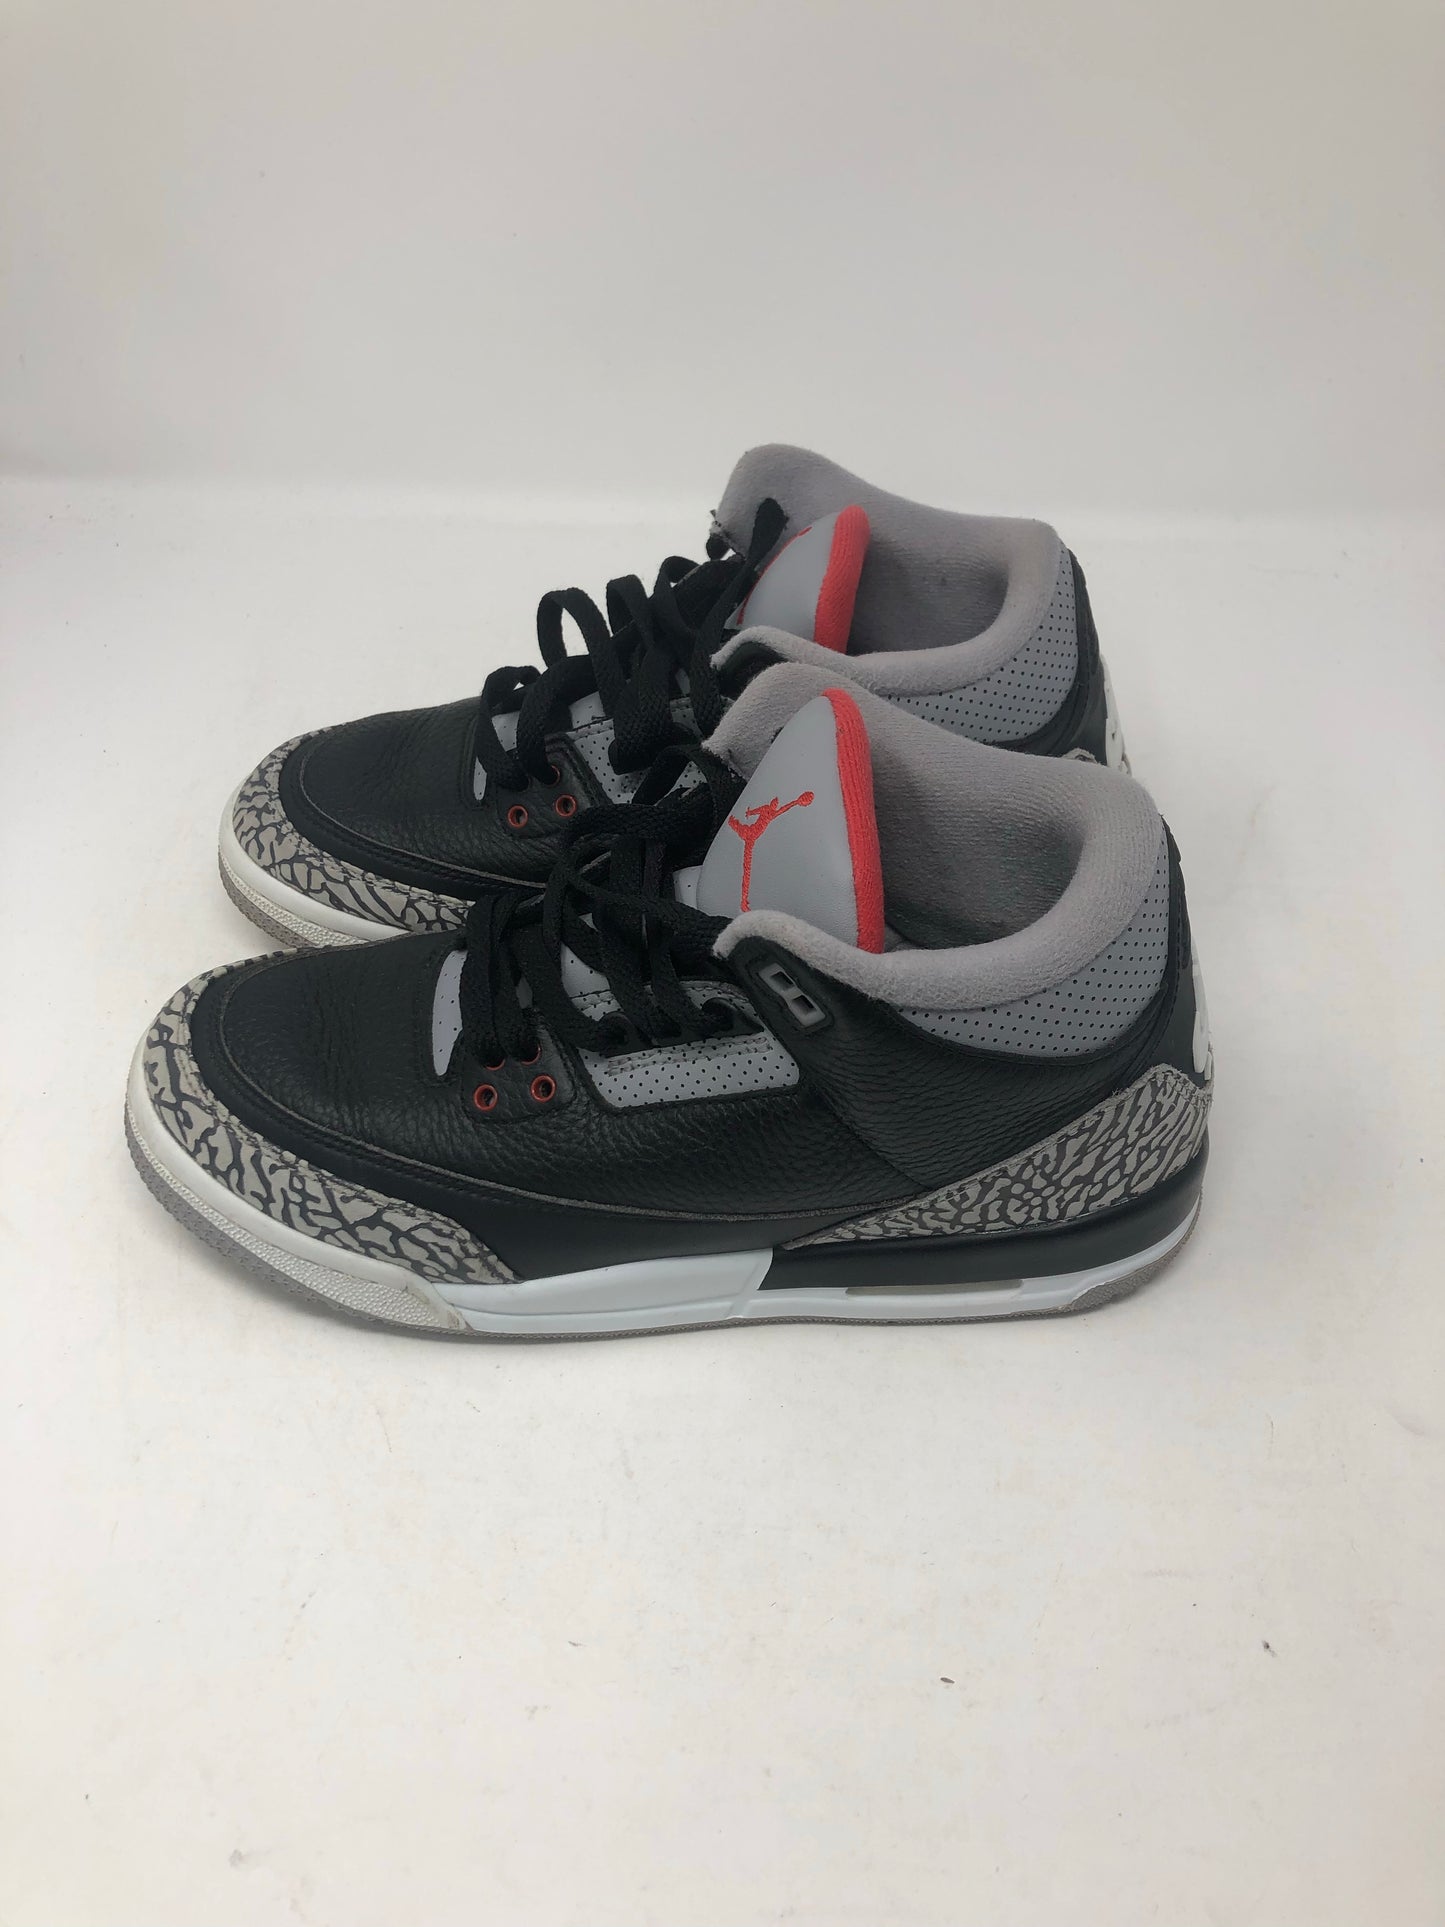 Jordan 3 Retro Black Cement 2018 (GS) Sz 7Y/8.5W